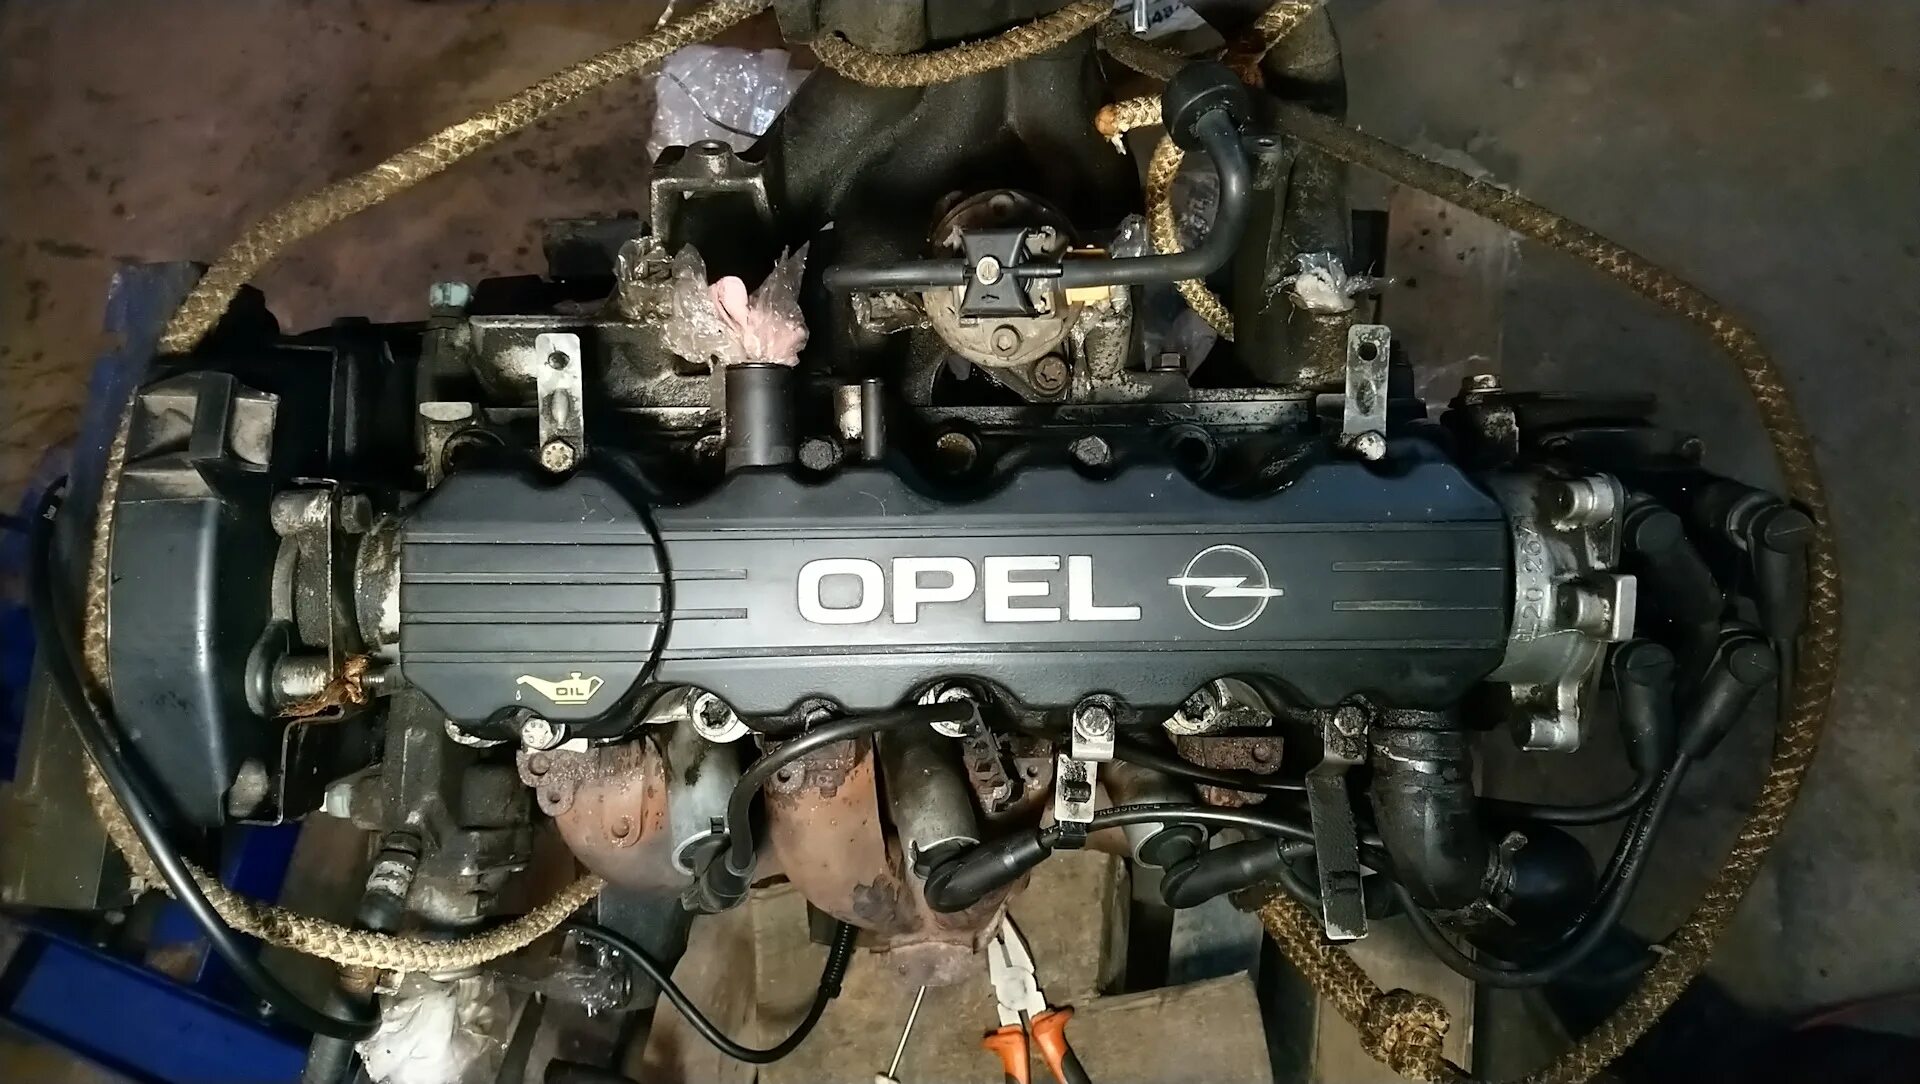 Opel Omega x20se. Опель Омега б 2.0 8 клапанов. Двигатель Опель Омега б 2.0. Opel Omega b x20se. Омега б x20se